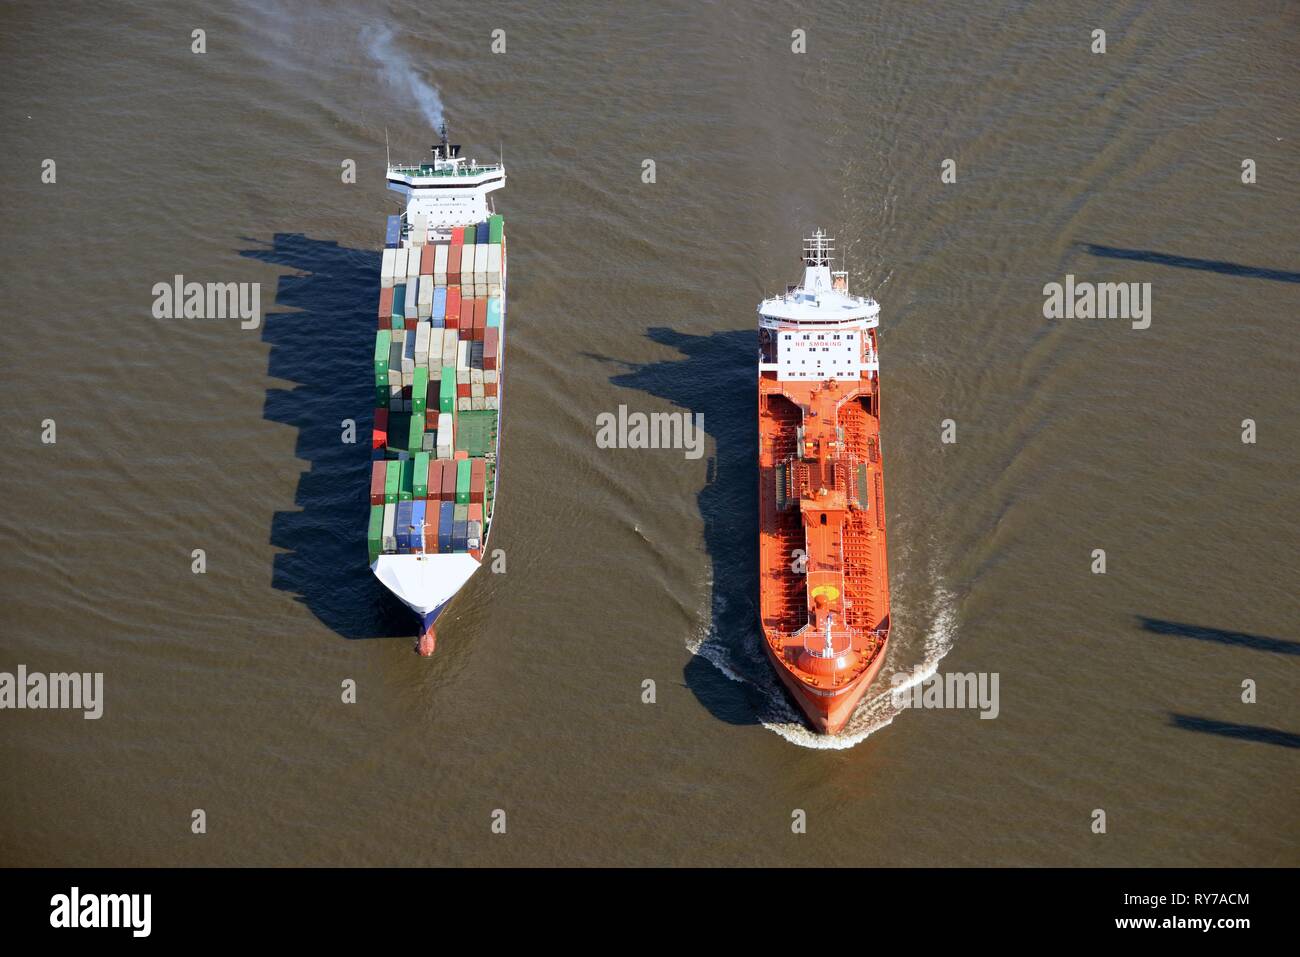 Alimentatore e nave cisterna sull'Elba, Amburgo, Germania Foto Stock